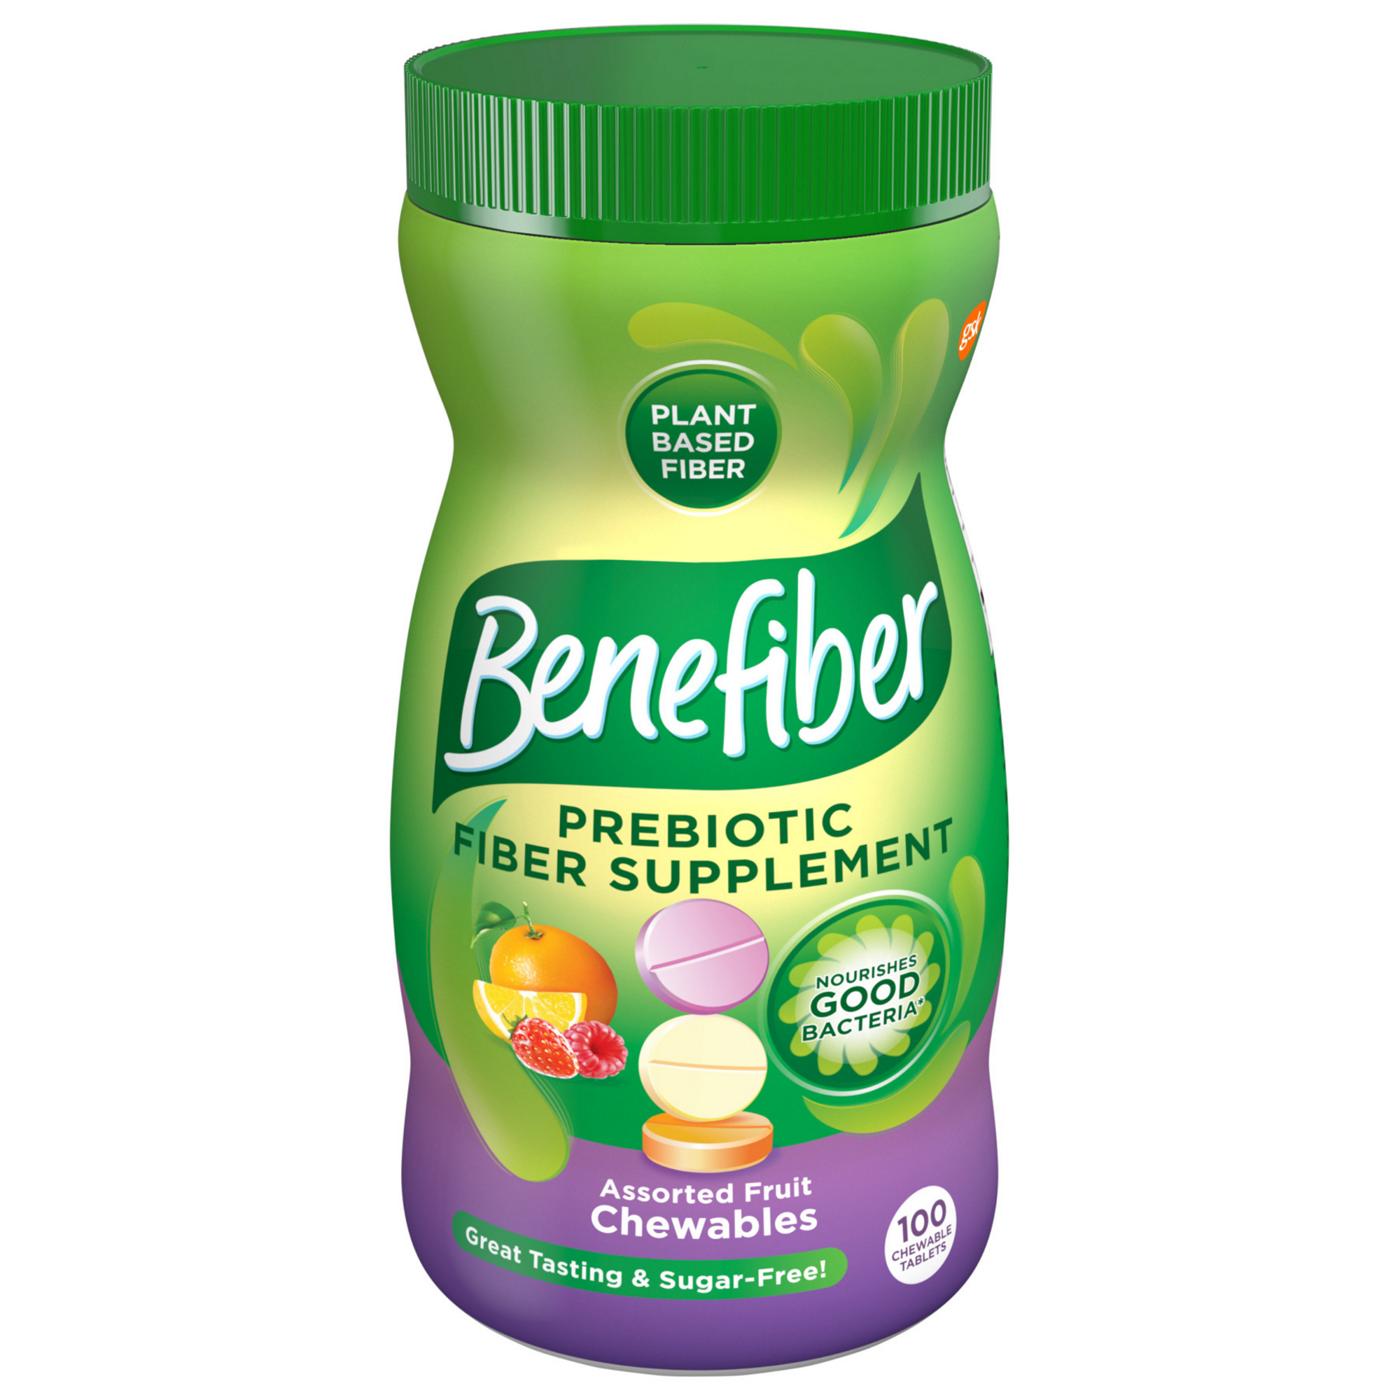 Benefiber Prebiotic Fiber Supplement Chewable Assorted Fruit; image 1 of 9